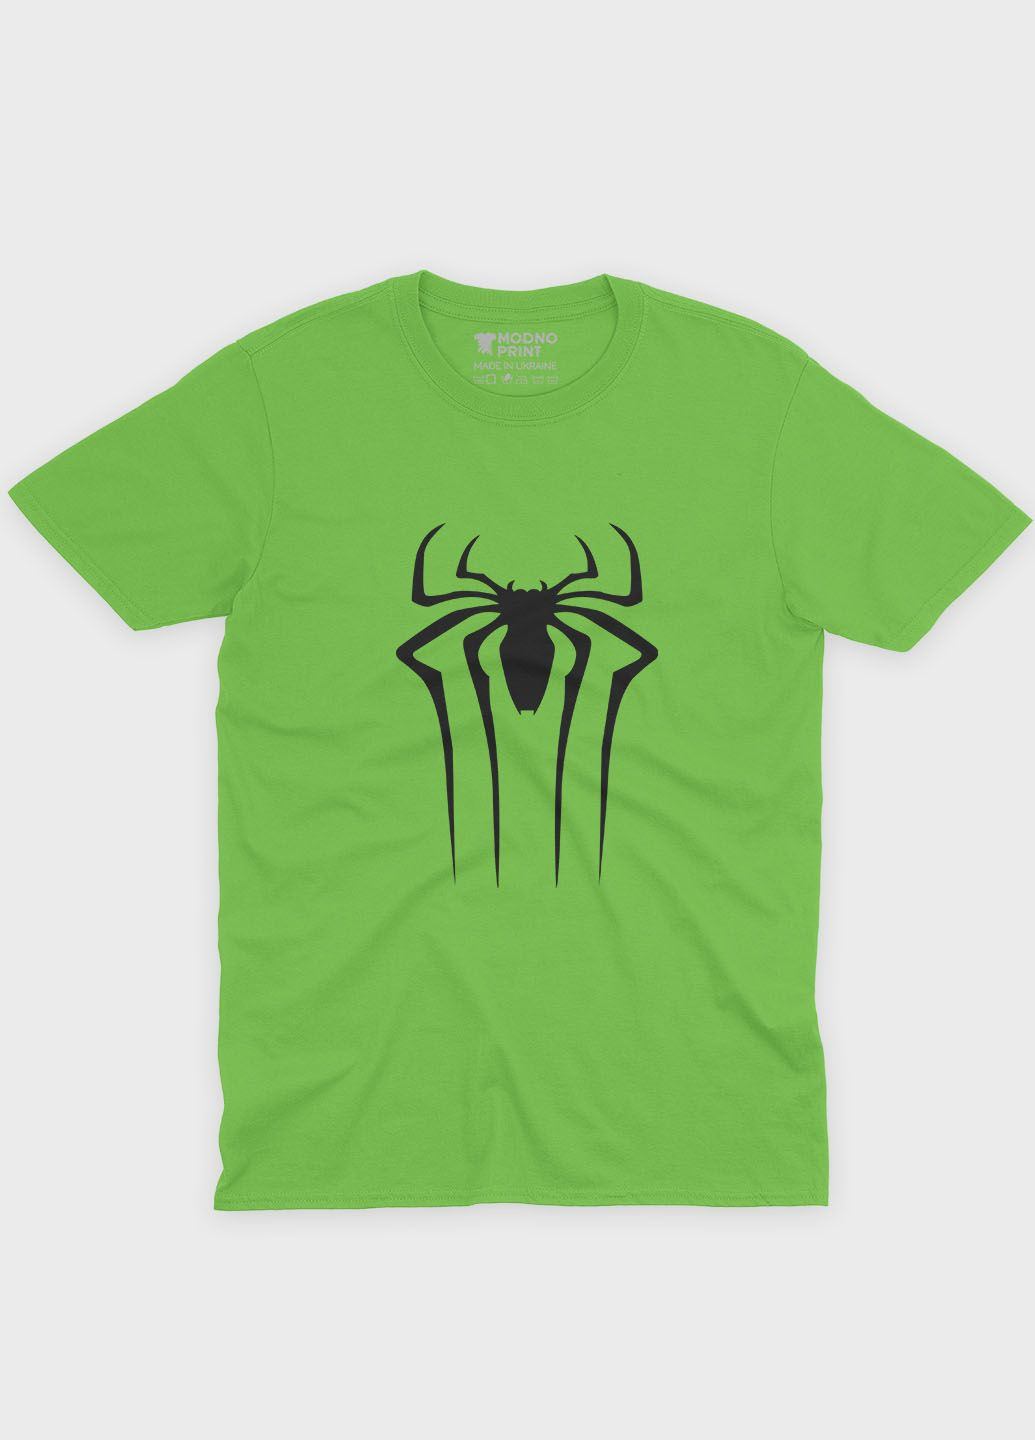 Салатовая демисезонная футболка для девочки с принтом супергероя - человек-паук (ts001-1-kiw-006-014-107-g) Modno